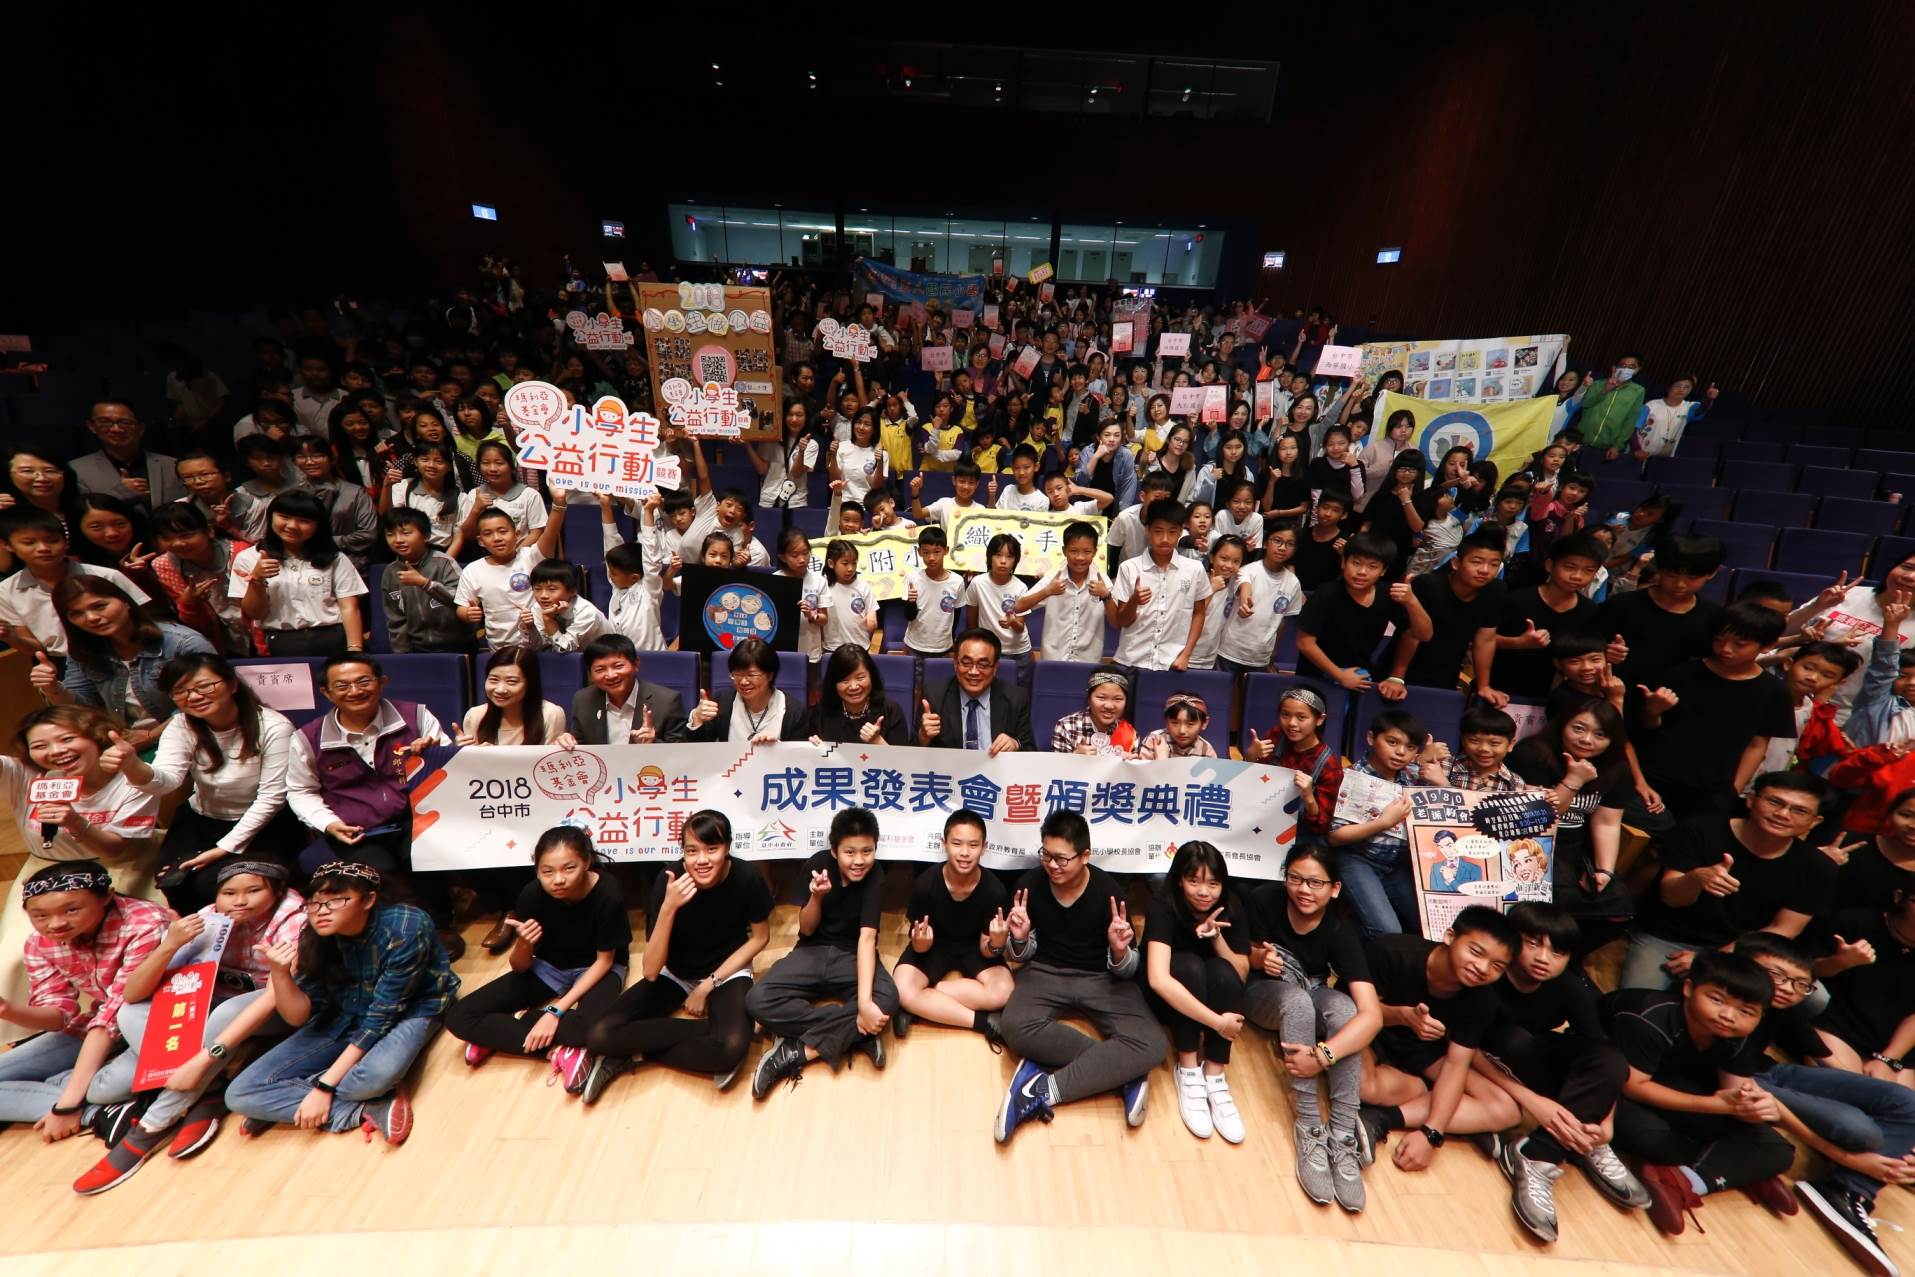 2018臺中市小學生公益行動成果發表會暨頒獎典禮合影。